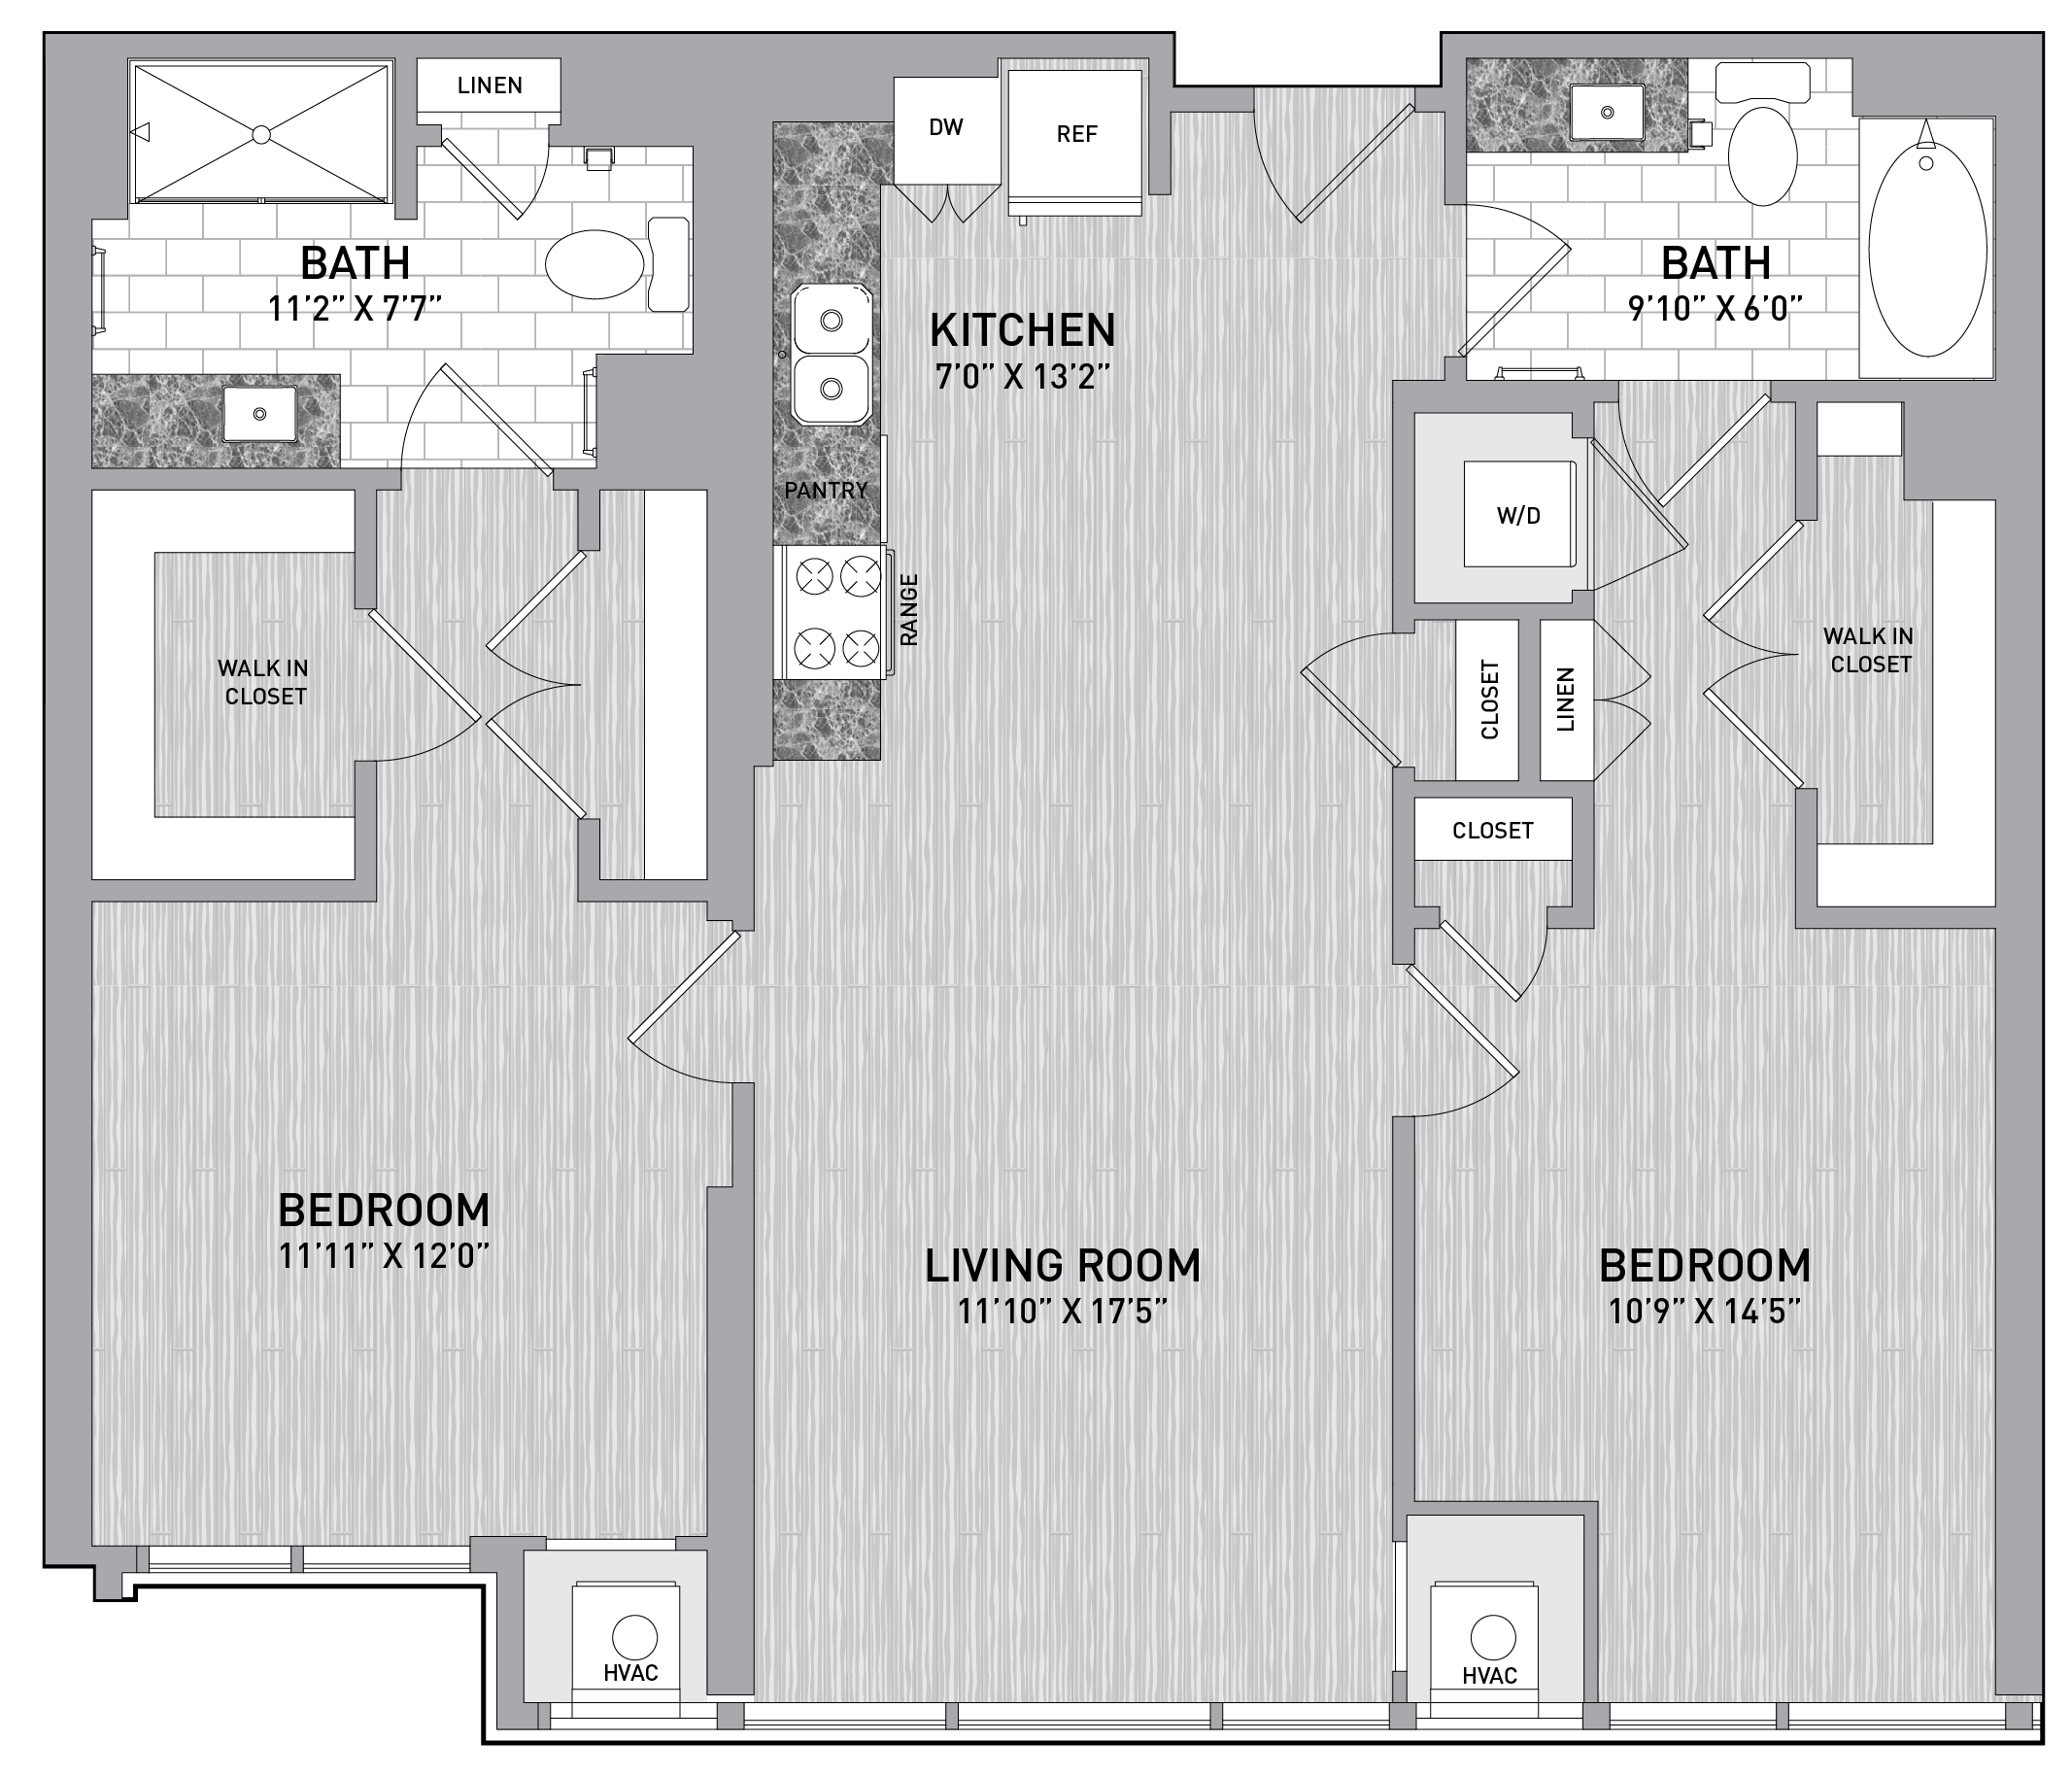 floorplan image of unit id 0718